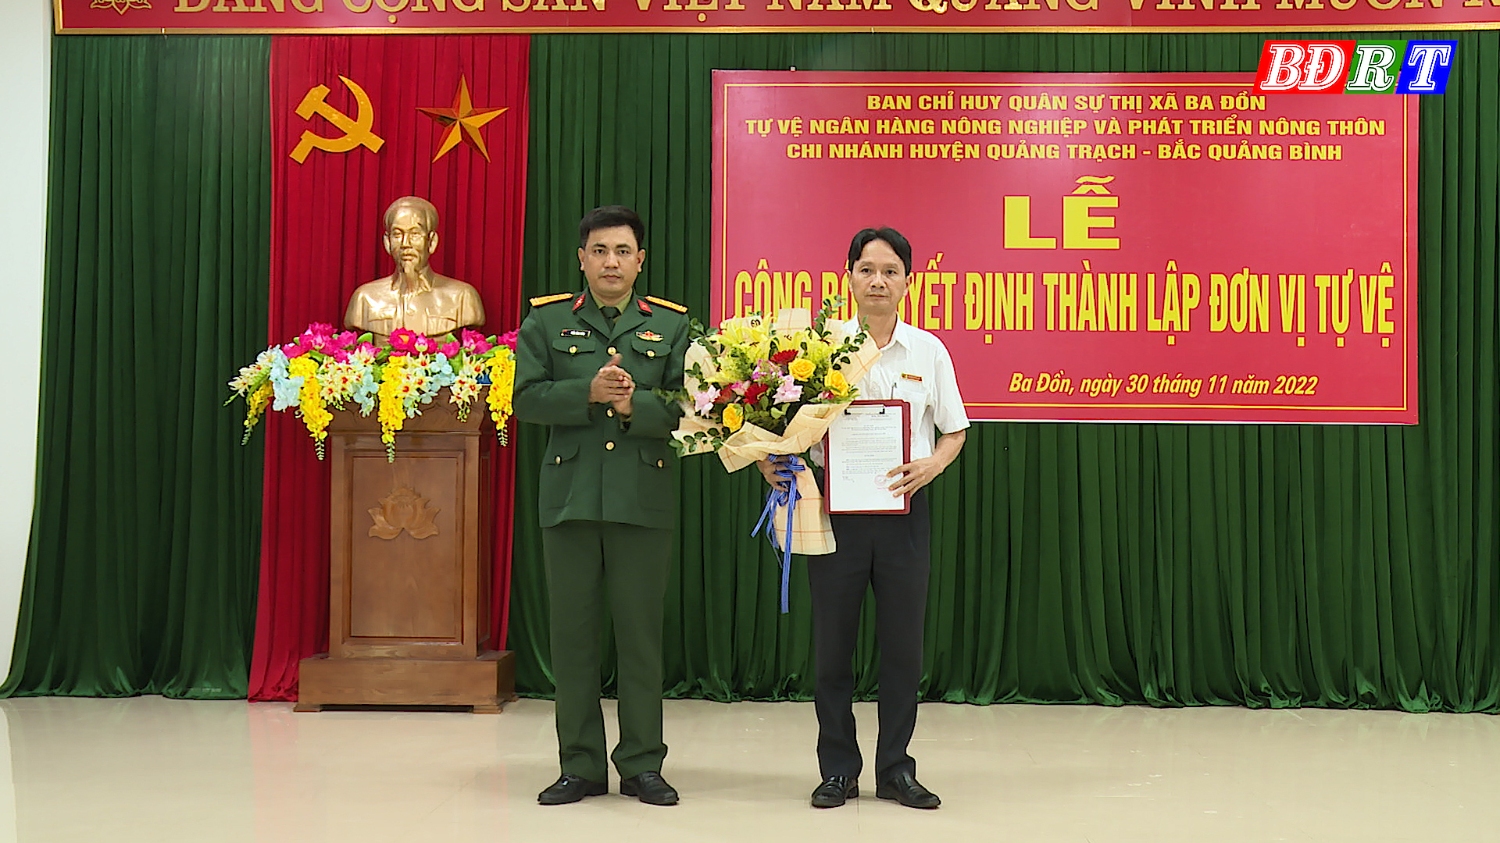 Trao Quyết định thành lập đơn vị tự vệ Ngân hàng Nông nghiệp và phát triển  nông thôn Việt Nam chi nhánh huyện Quảng Trạch-Bắc Quảng Bình.